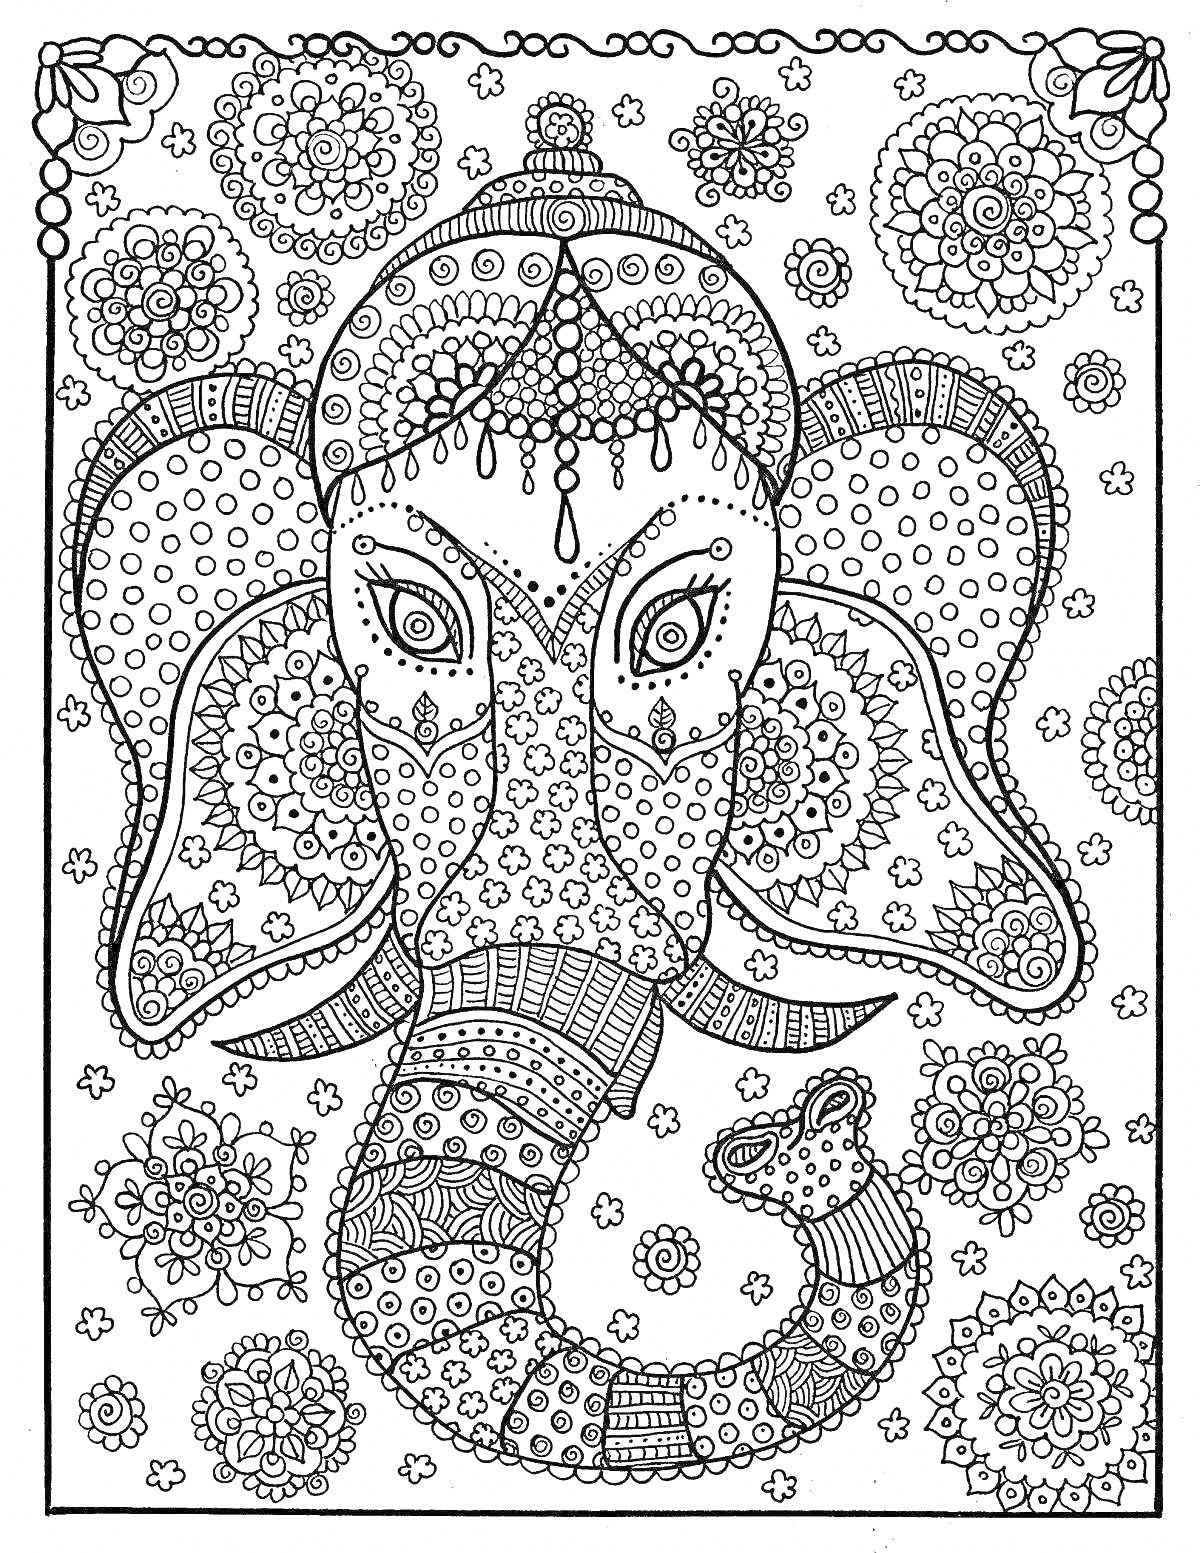 Раскраска Слон в стилизированных узорах, окруженный мандалами и цветочными мотивами